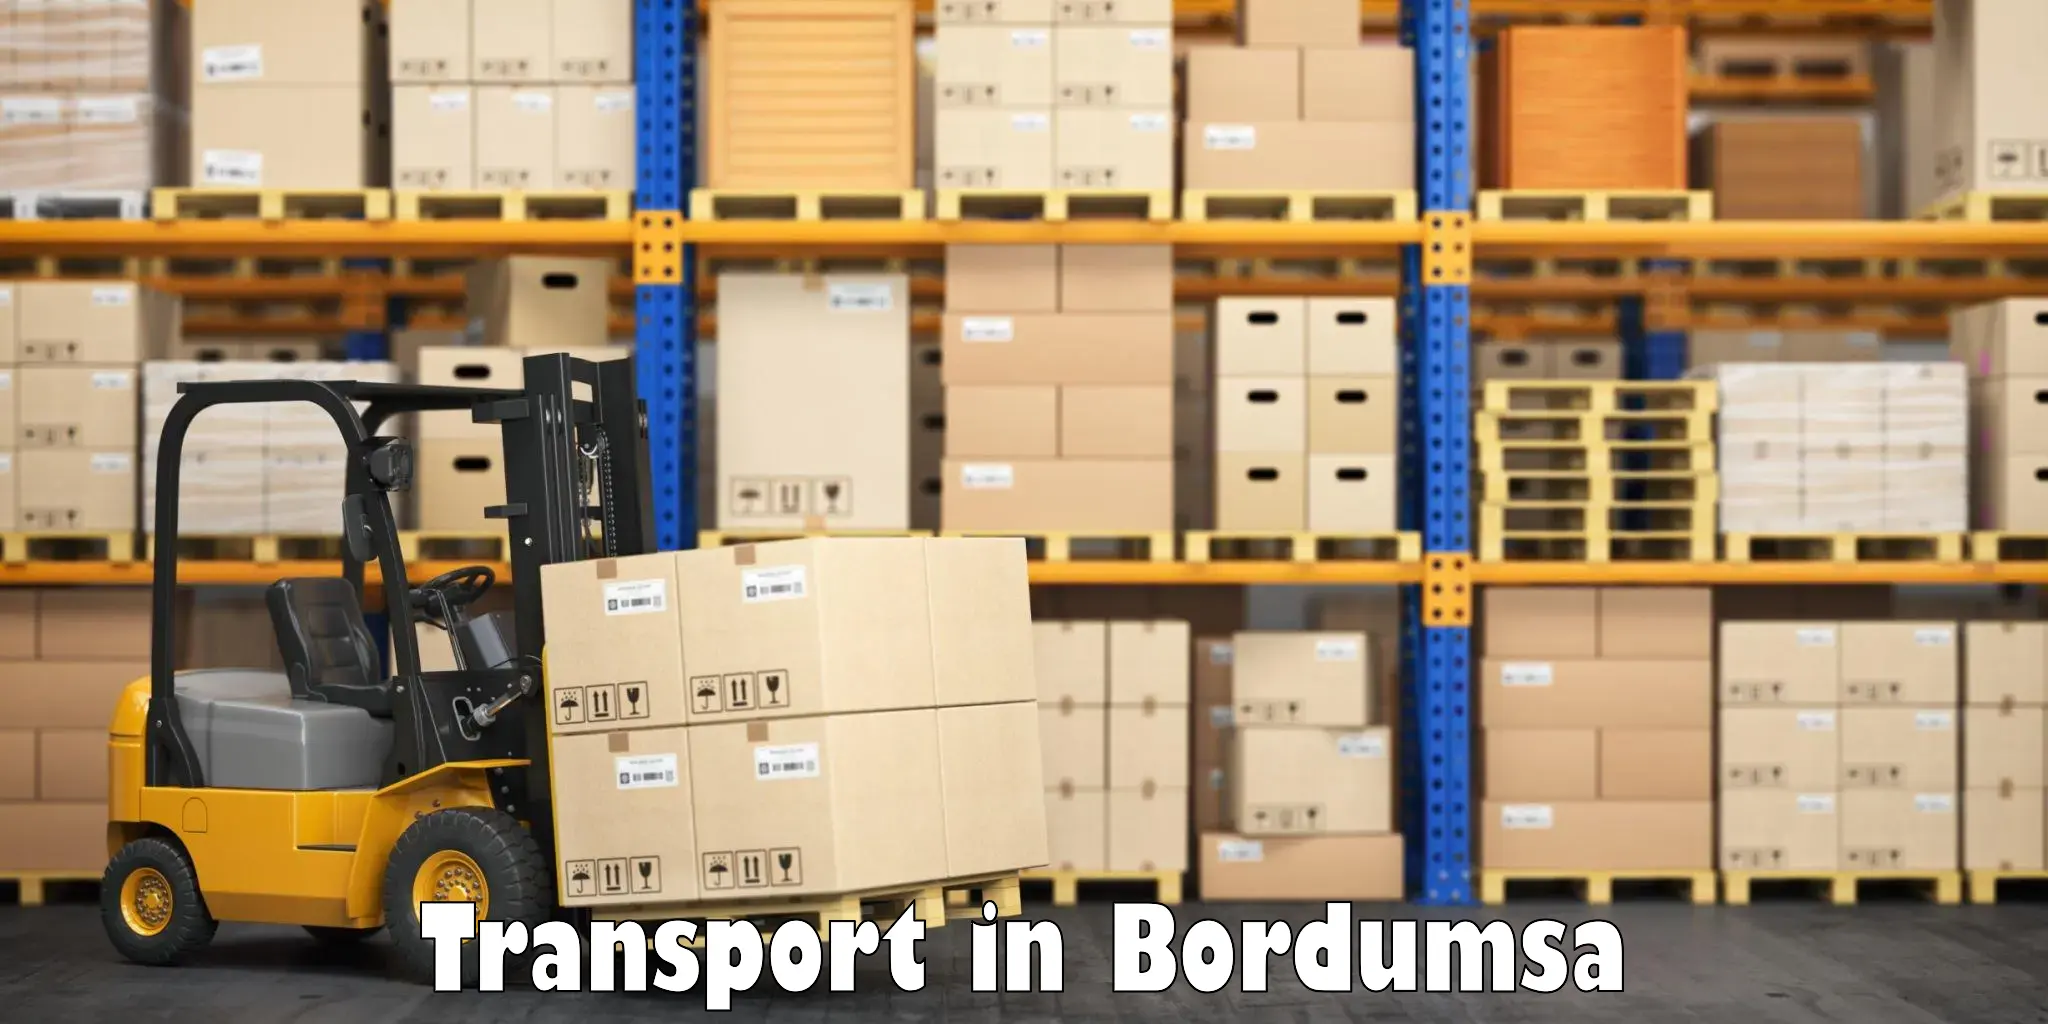 India truck logistics services in Bordumsa